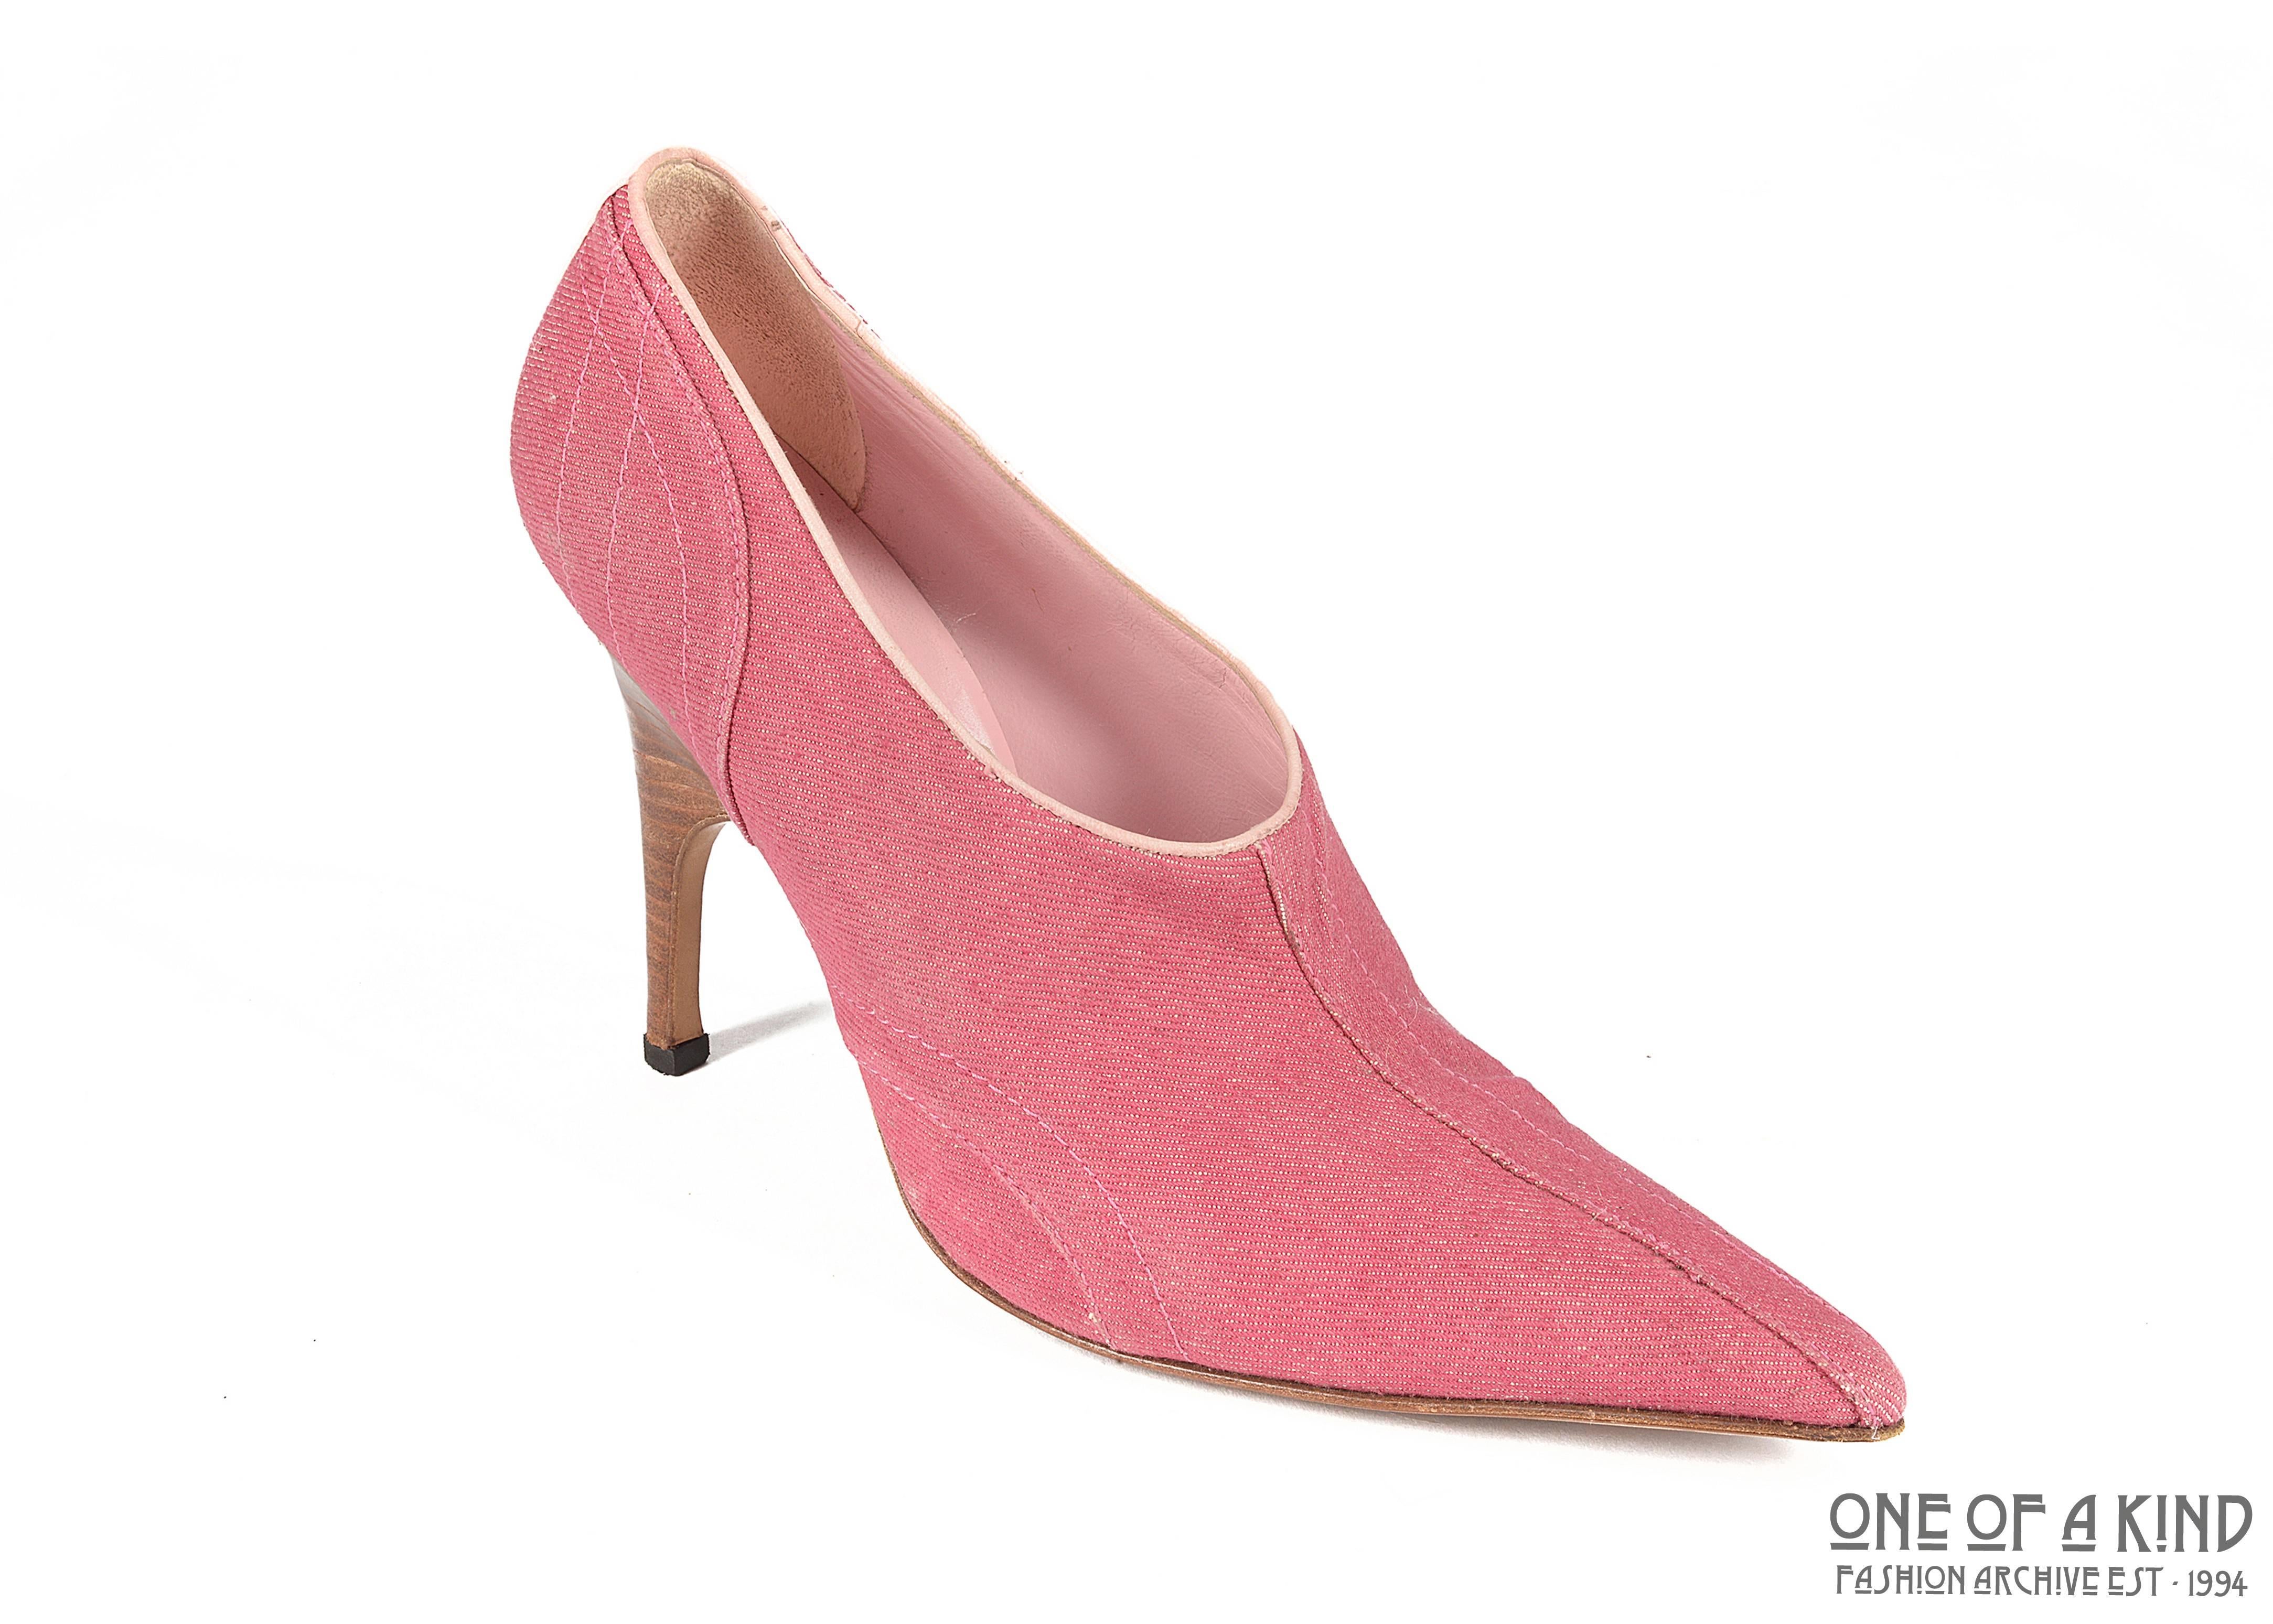 Alexander McQueen pink denim pointed boots with wooden heels

ca. 1996-2002